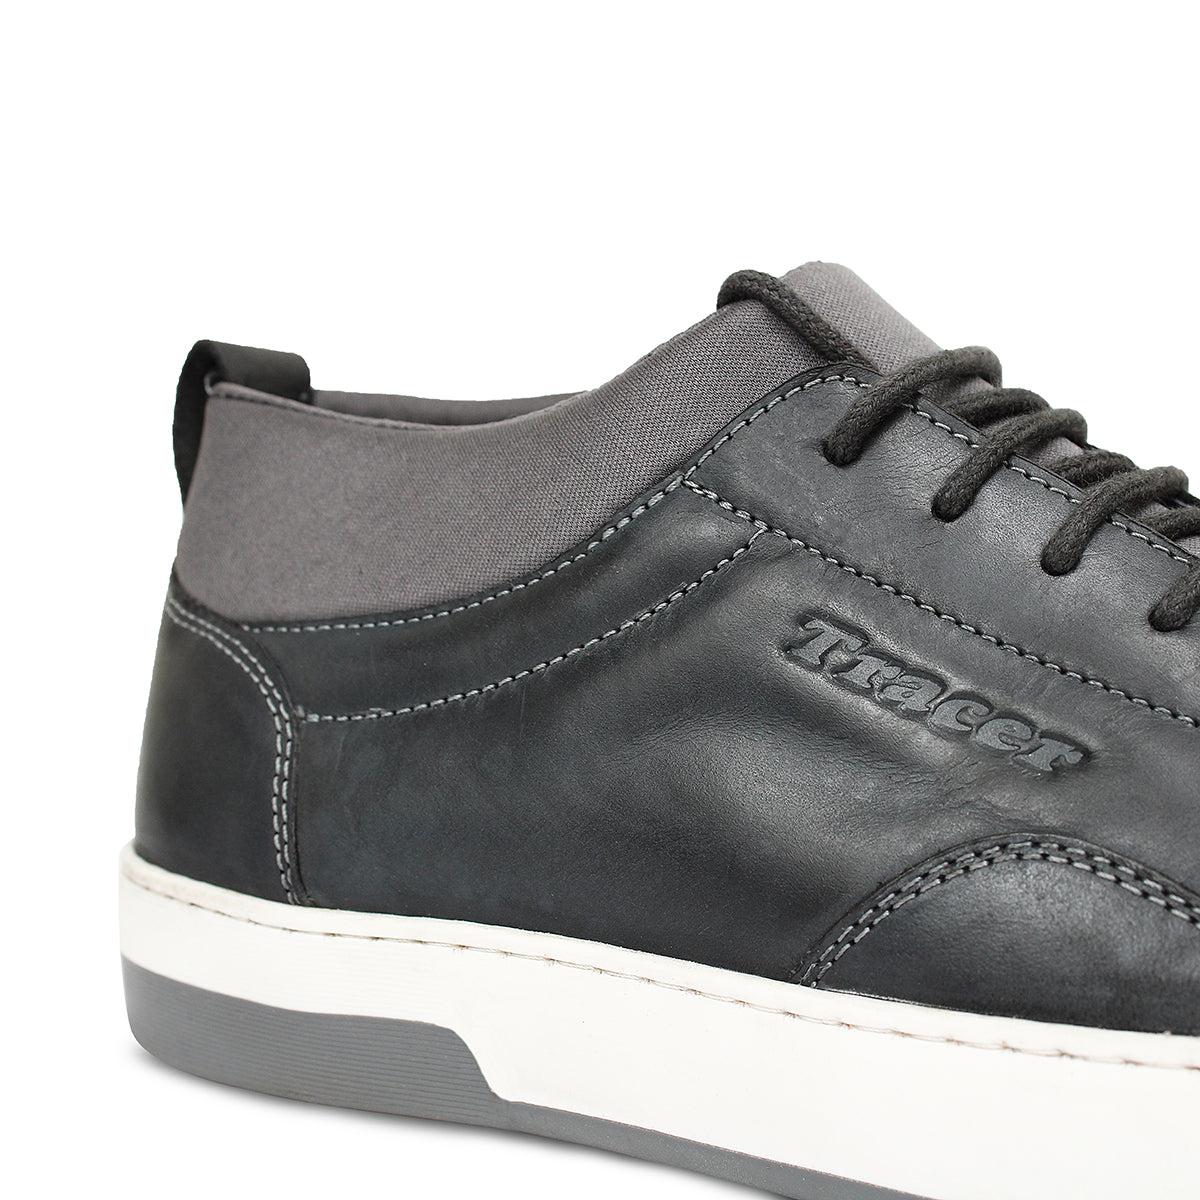 Stylish Leather Shoes Grey